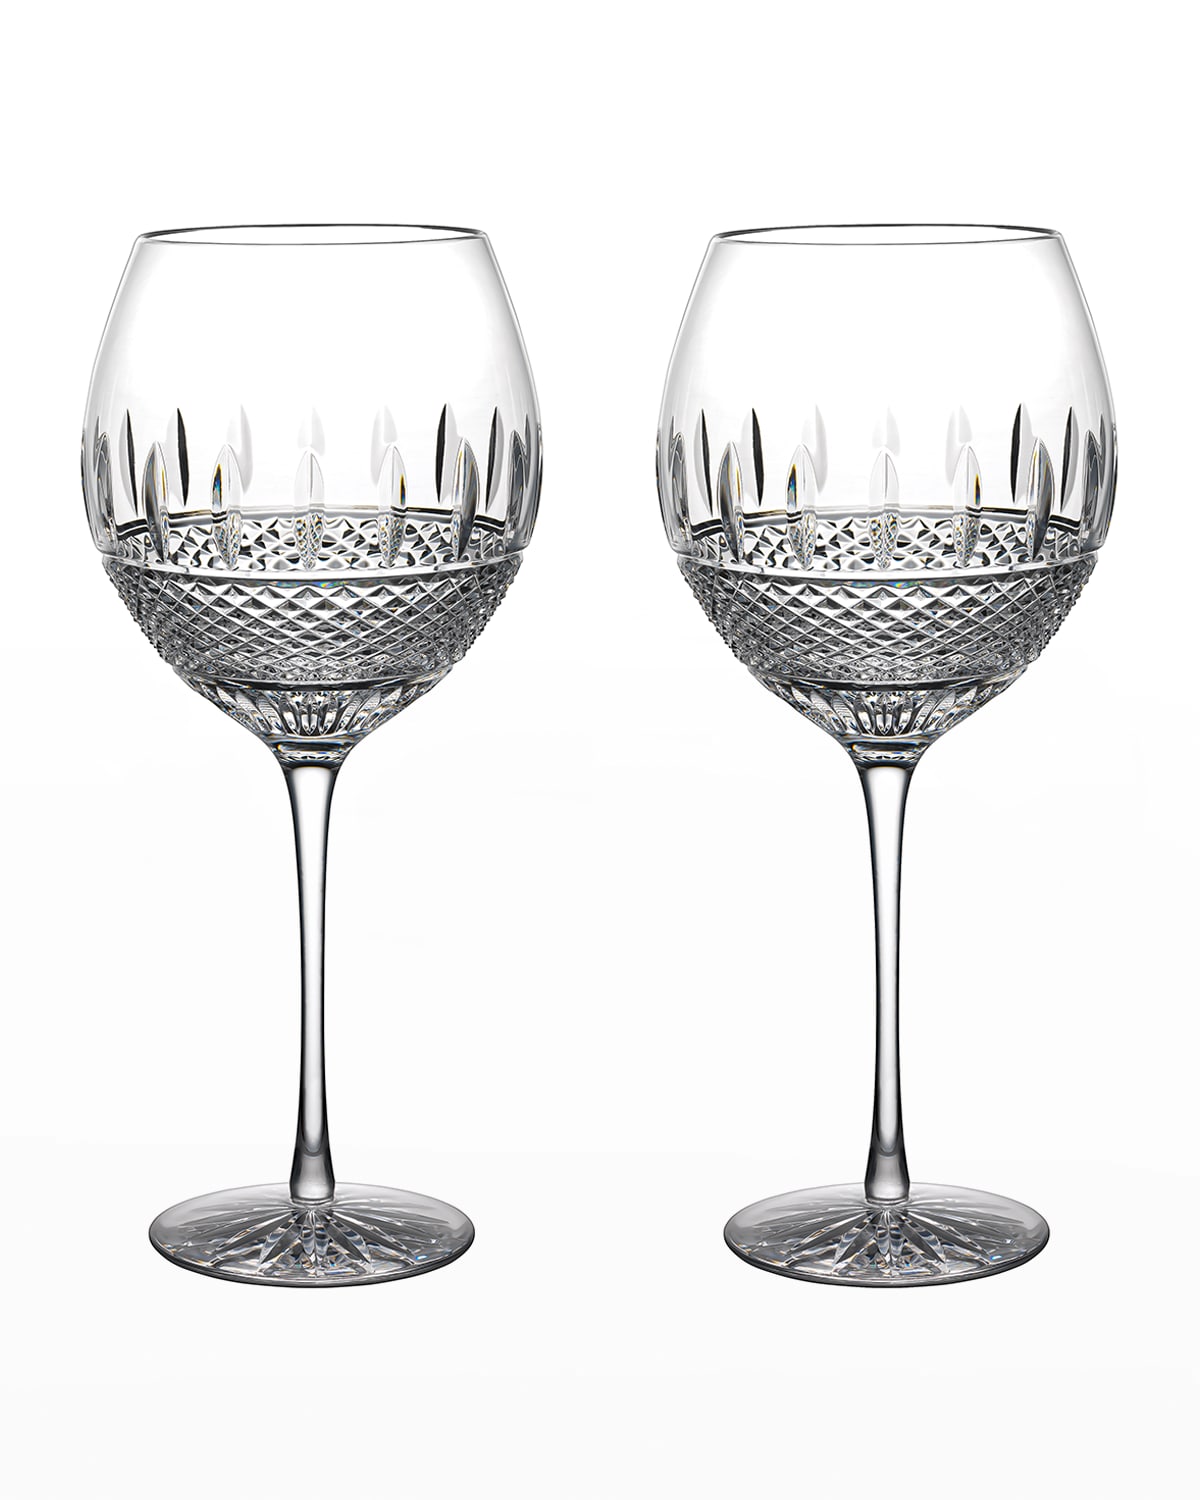 Crystal Red Wine Glasses - Wine Glasses Set of 4,Hand Blown Italian Wine  Glasses - Bordeaux Long Stem Wine Glasses Set - Gift-Box for Wedding